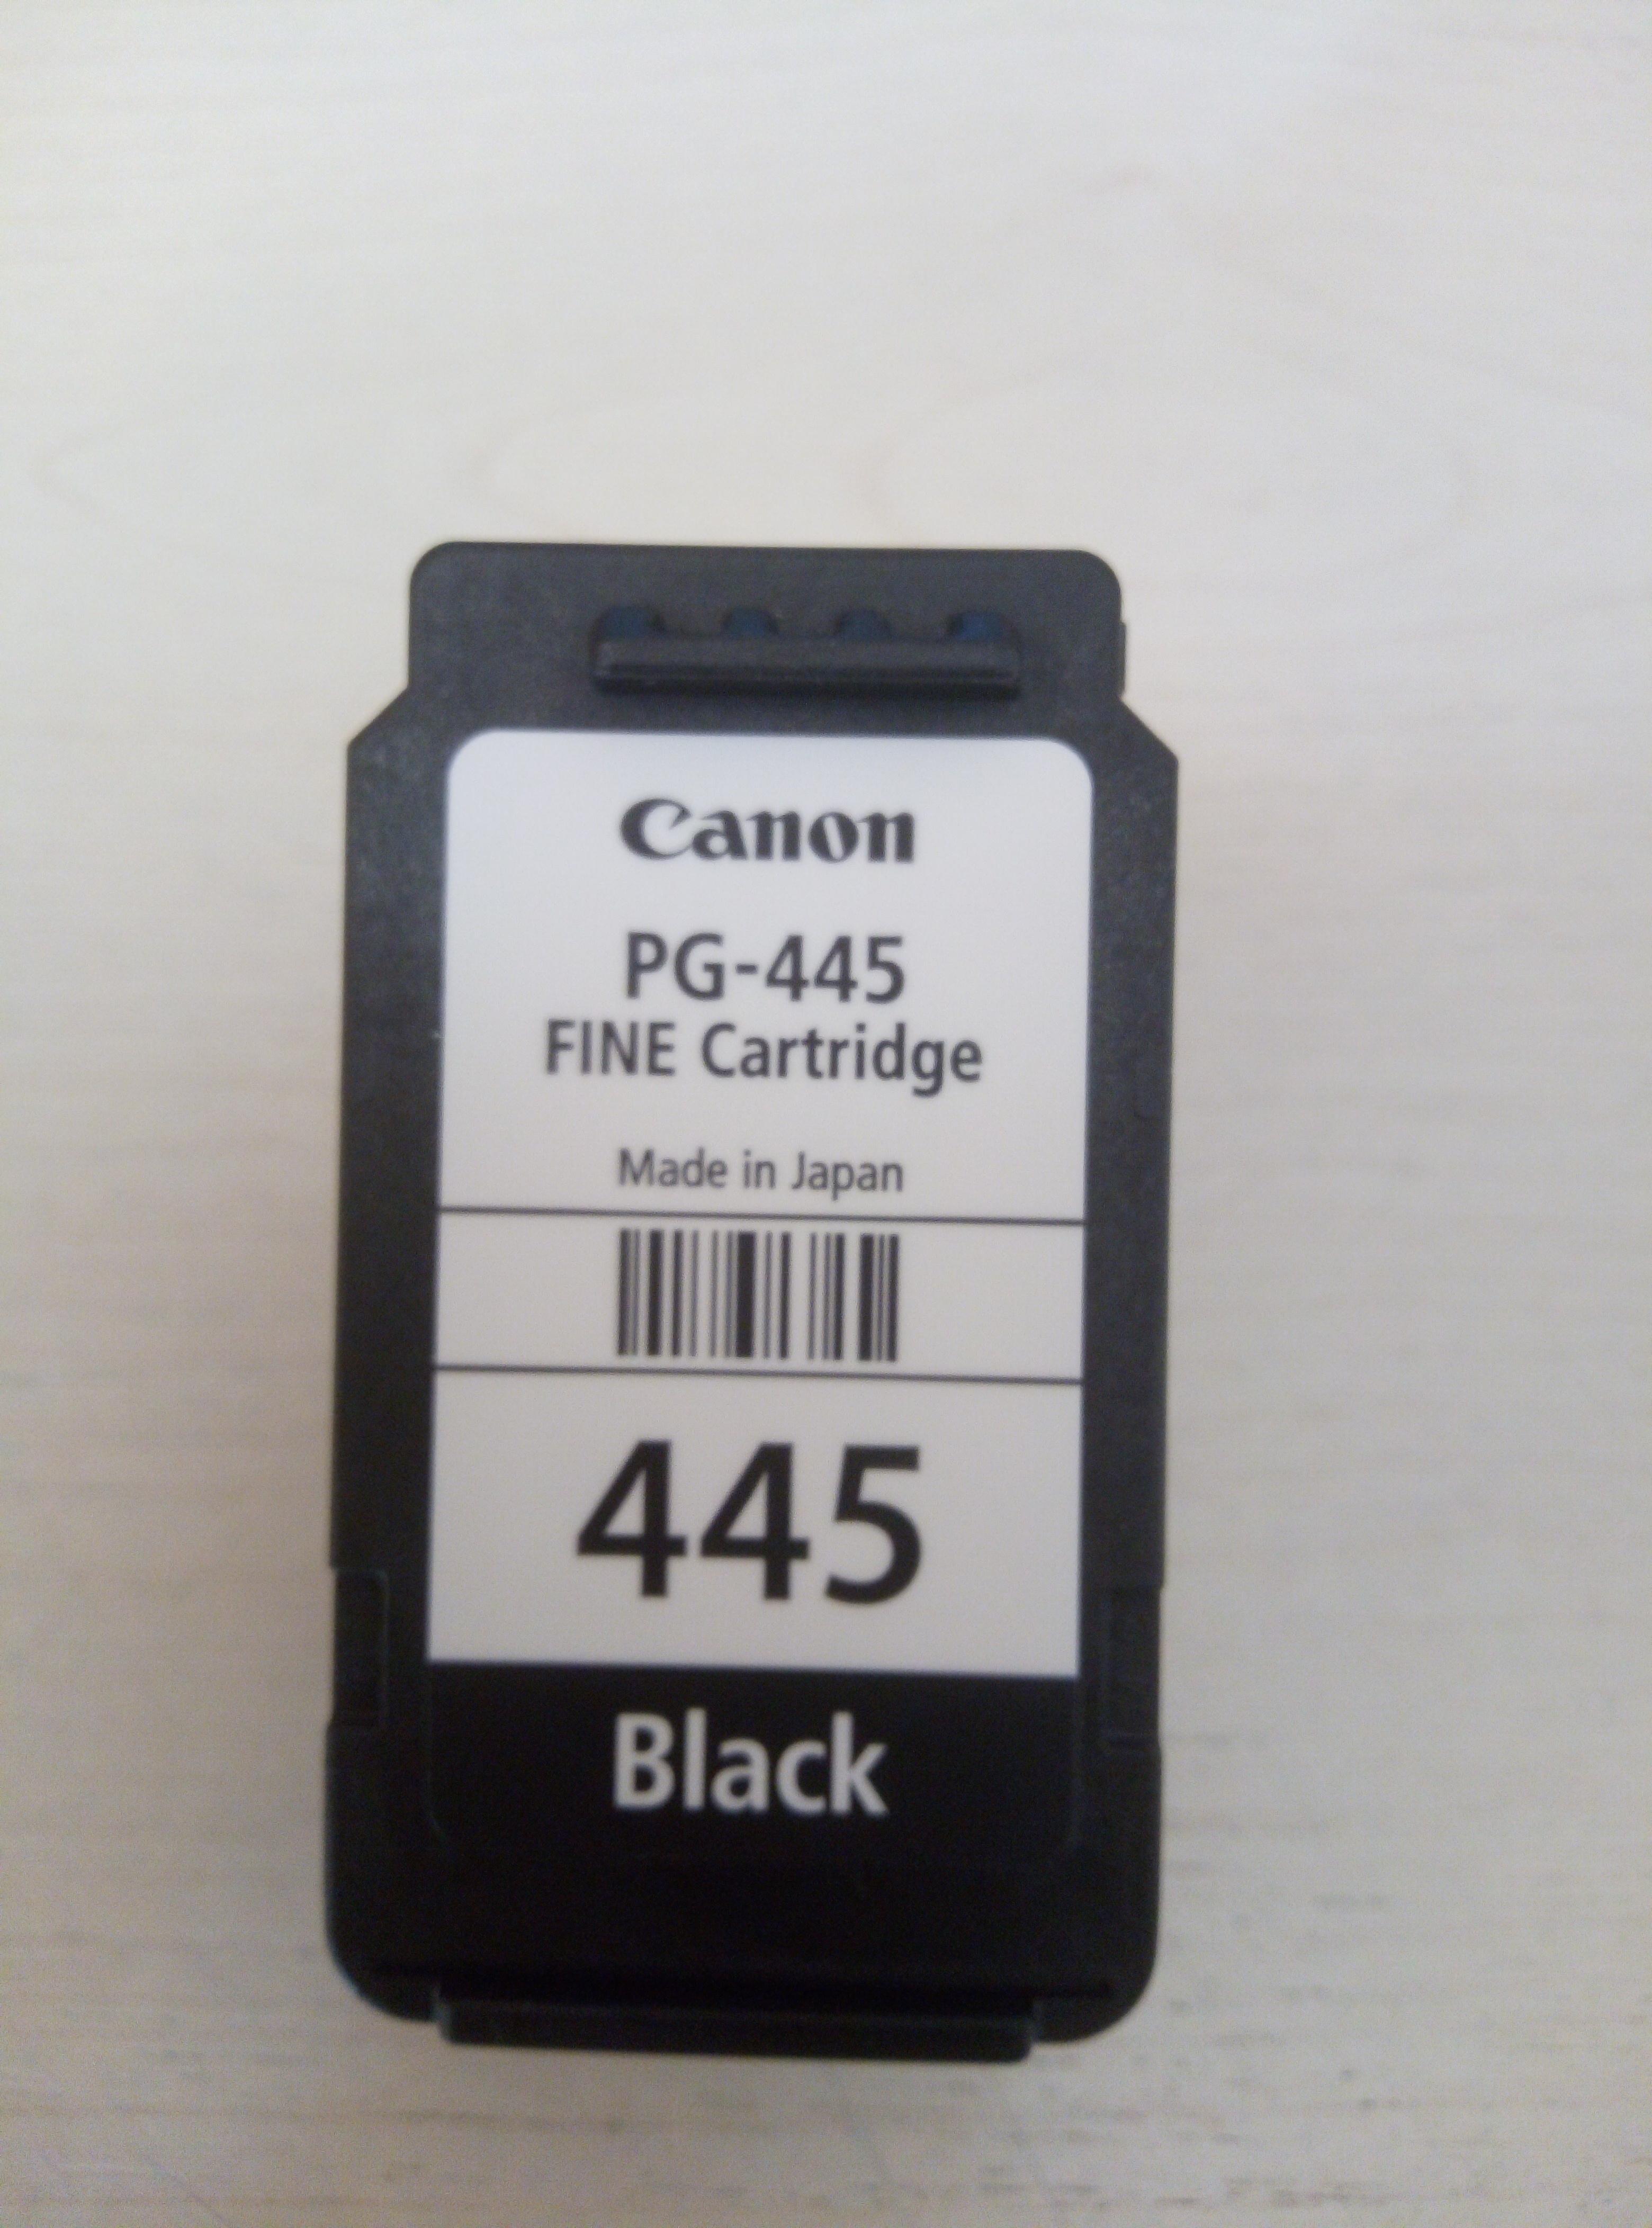 Canon pg 445 картридж для принтера купить. Canon 445 картридж. Canon PG-445. Принтер Canon PG 445. Картридж Canon PG-445 8283b001.